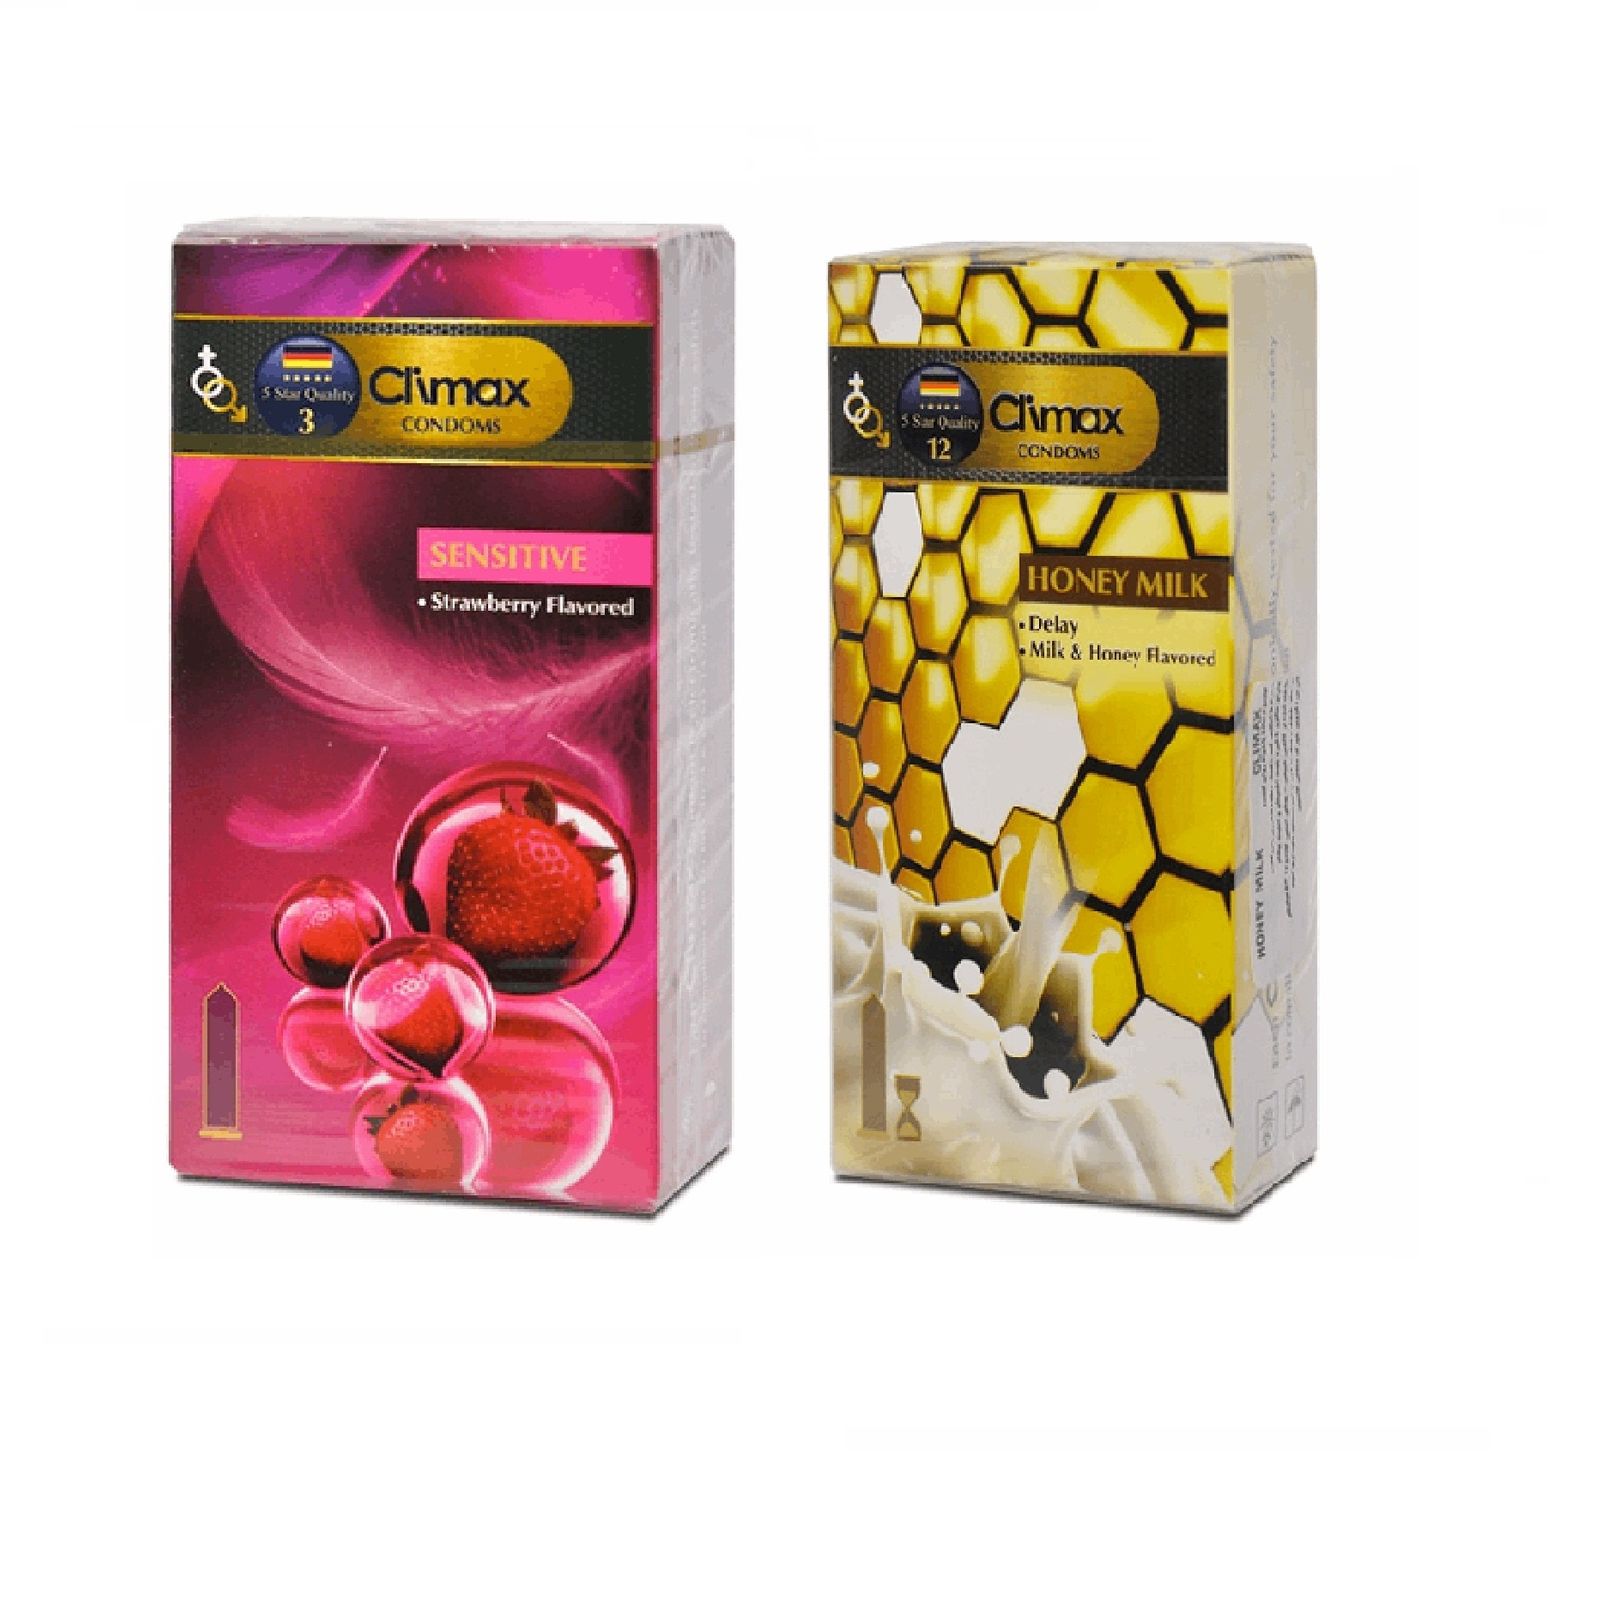 کاندوم کلایمکس مدل Sensitive بسته 12 عددی به همراه کاندوم کلایمکس مدل Honey Milk  بسته 12 عددی   -  - 1